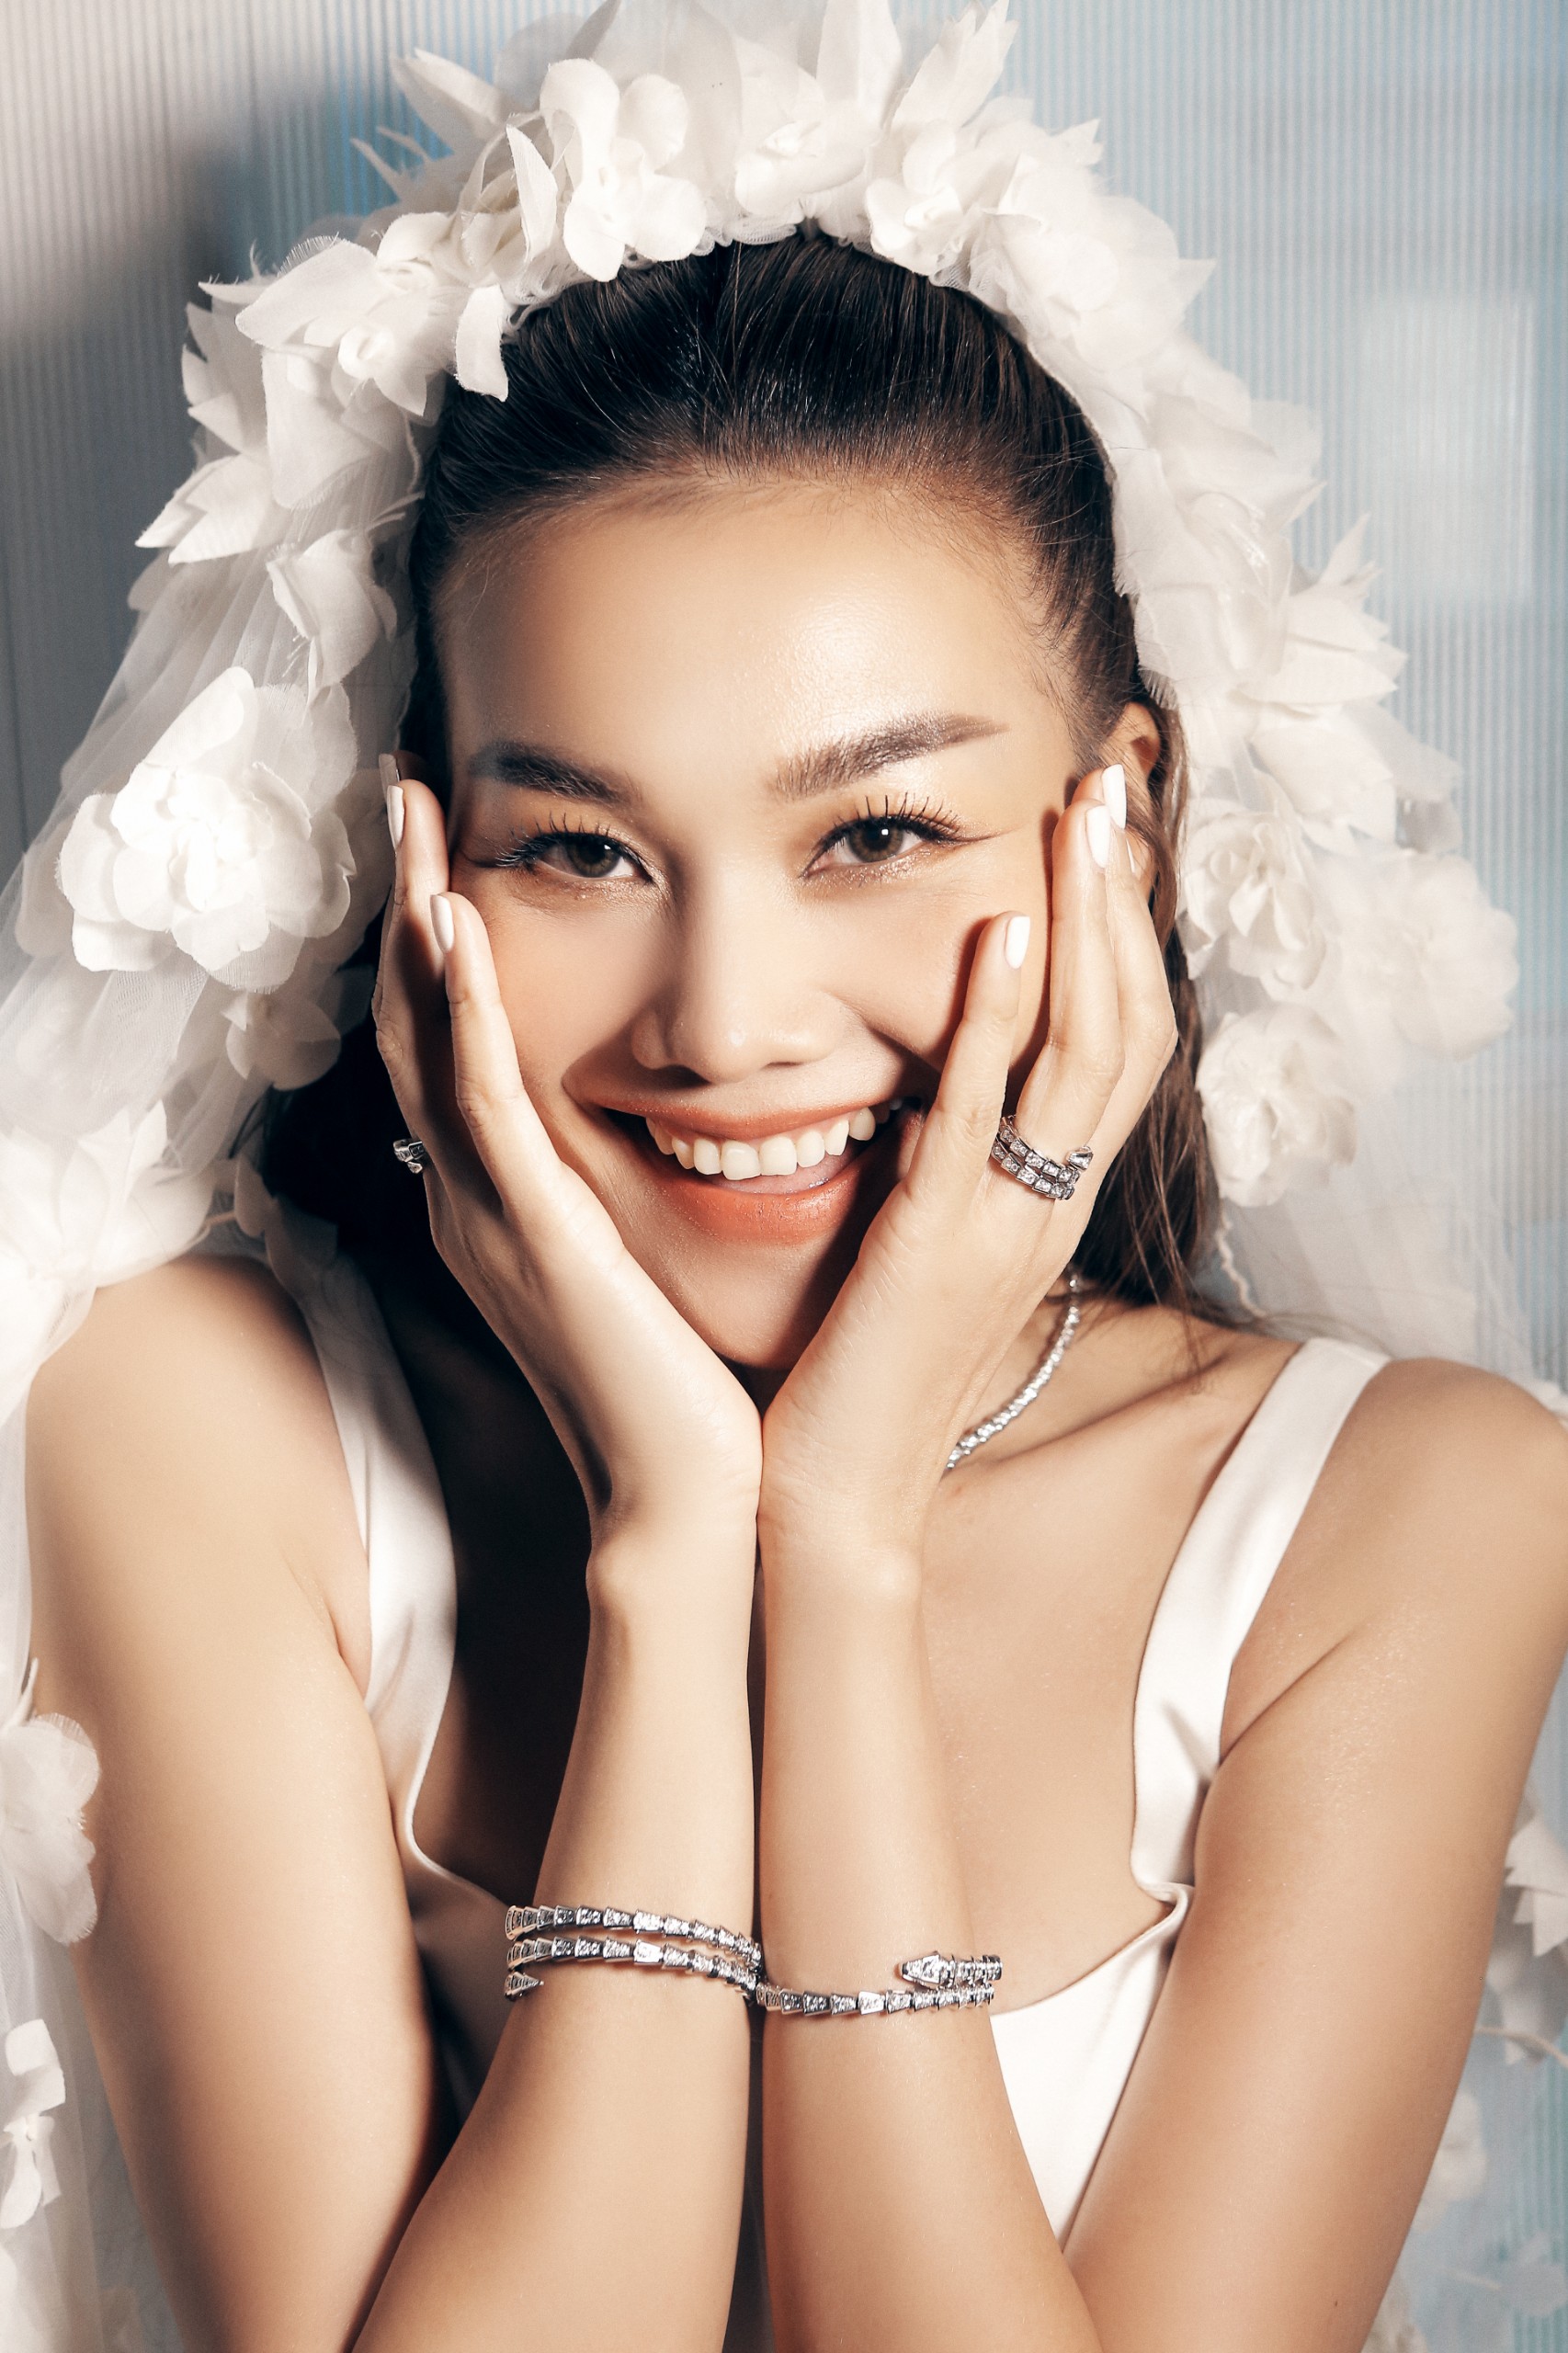 Siêu mẫu Thanh Hằng đeo trang sức hơn 10 tỉ đồng trong đám cưới - Ảnh 5.